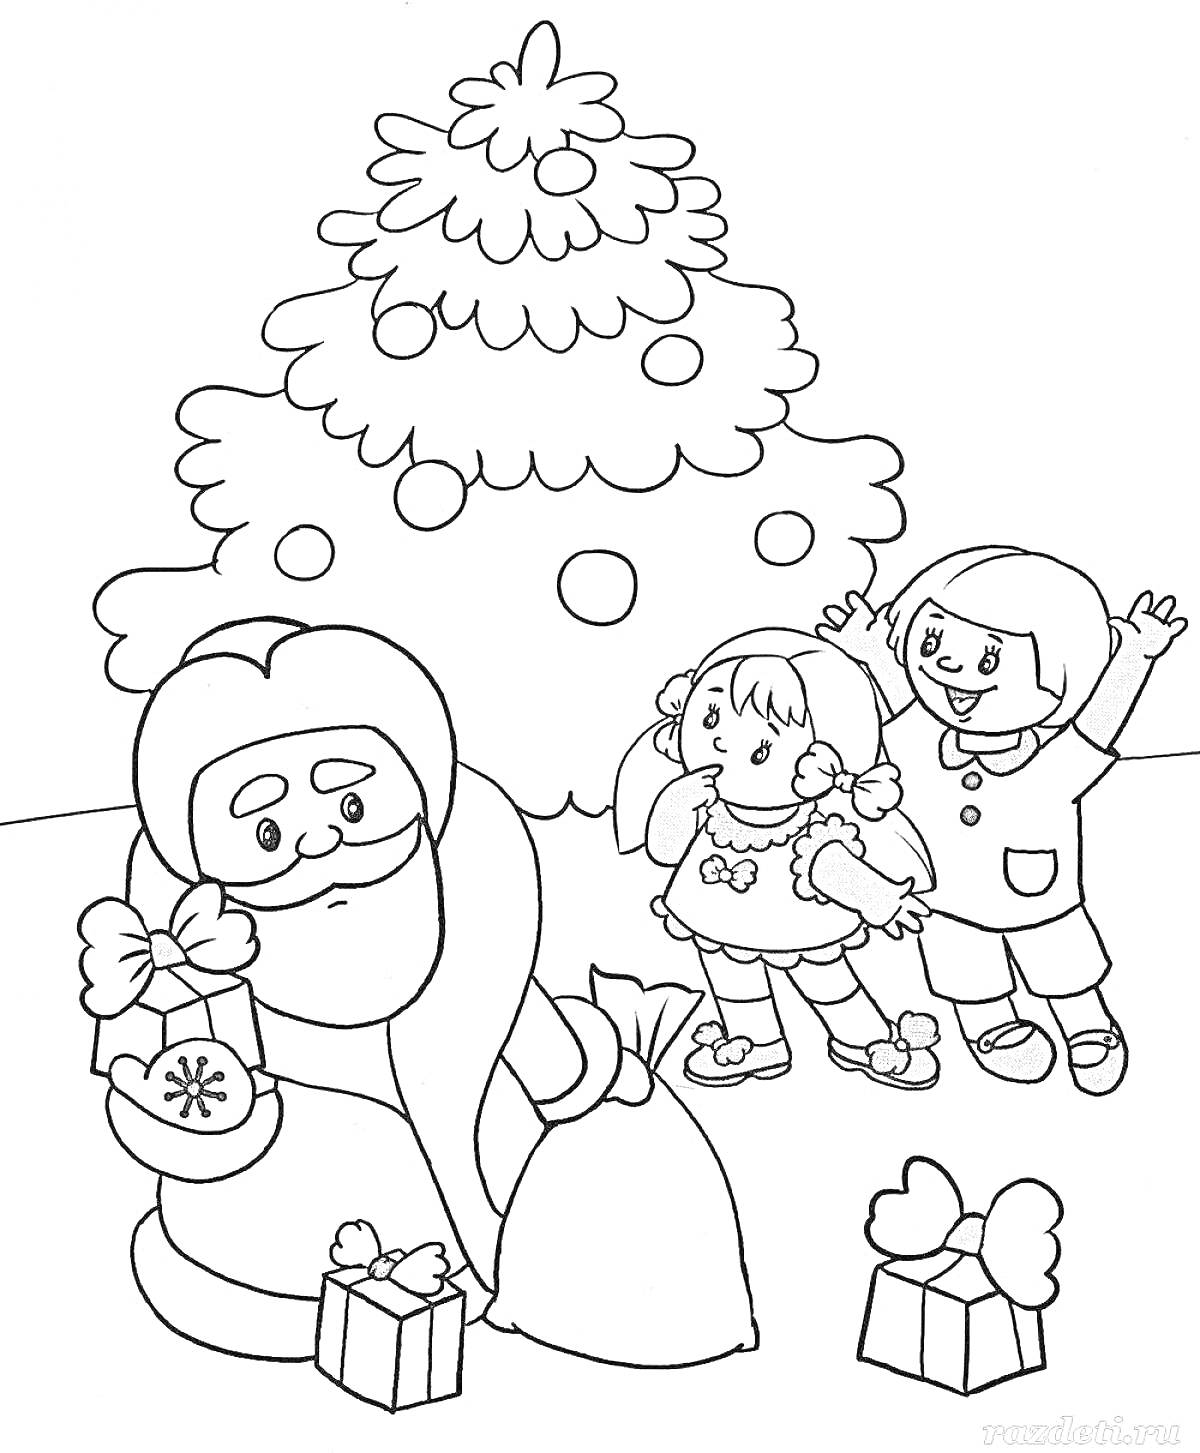 Раскраска Дед Мороз с подарками, рядом стоят дети возле елки